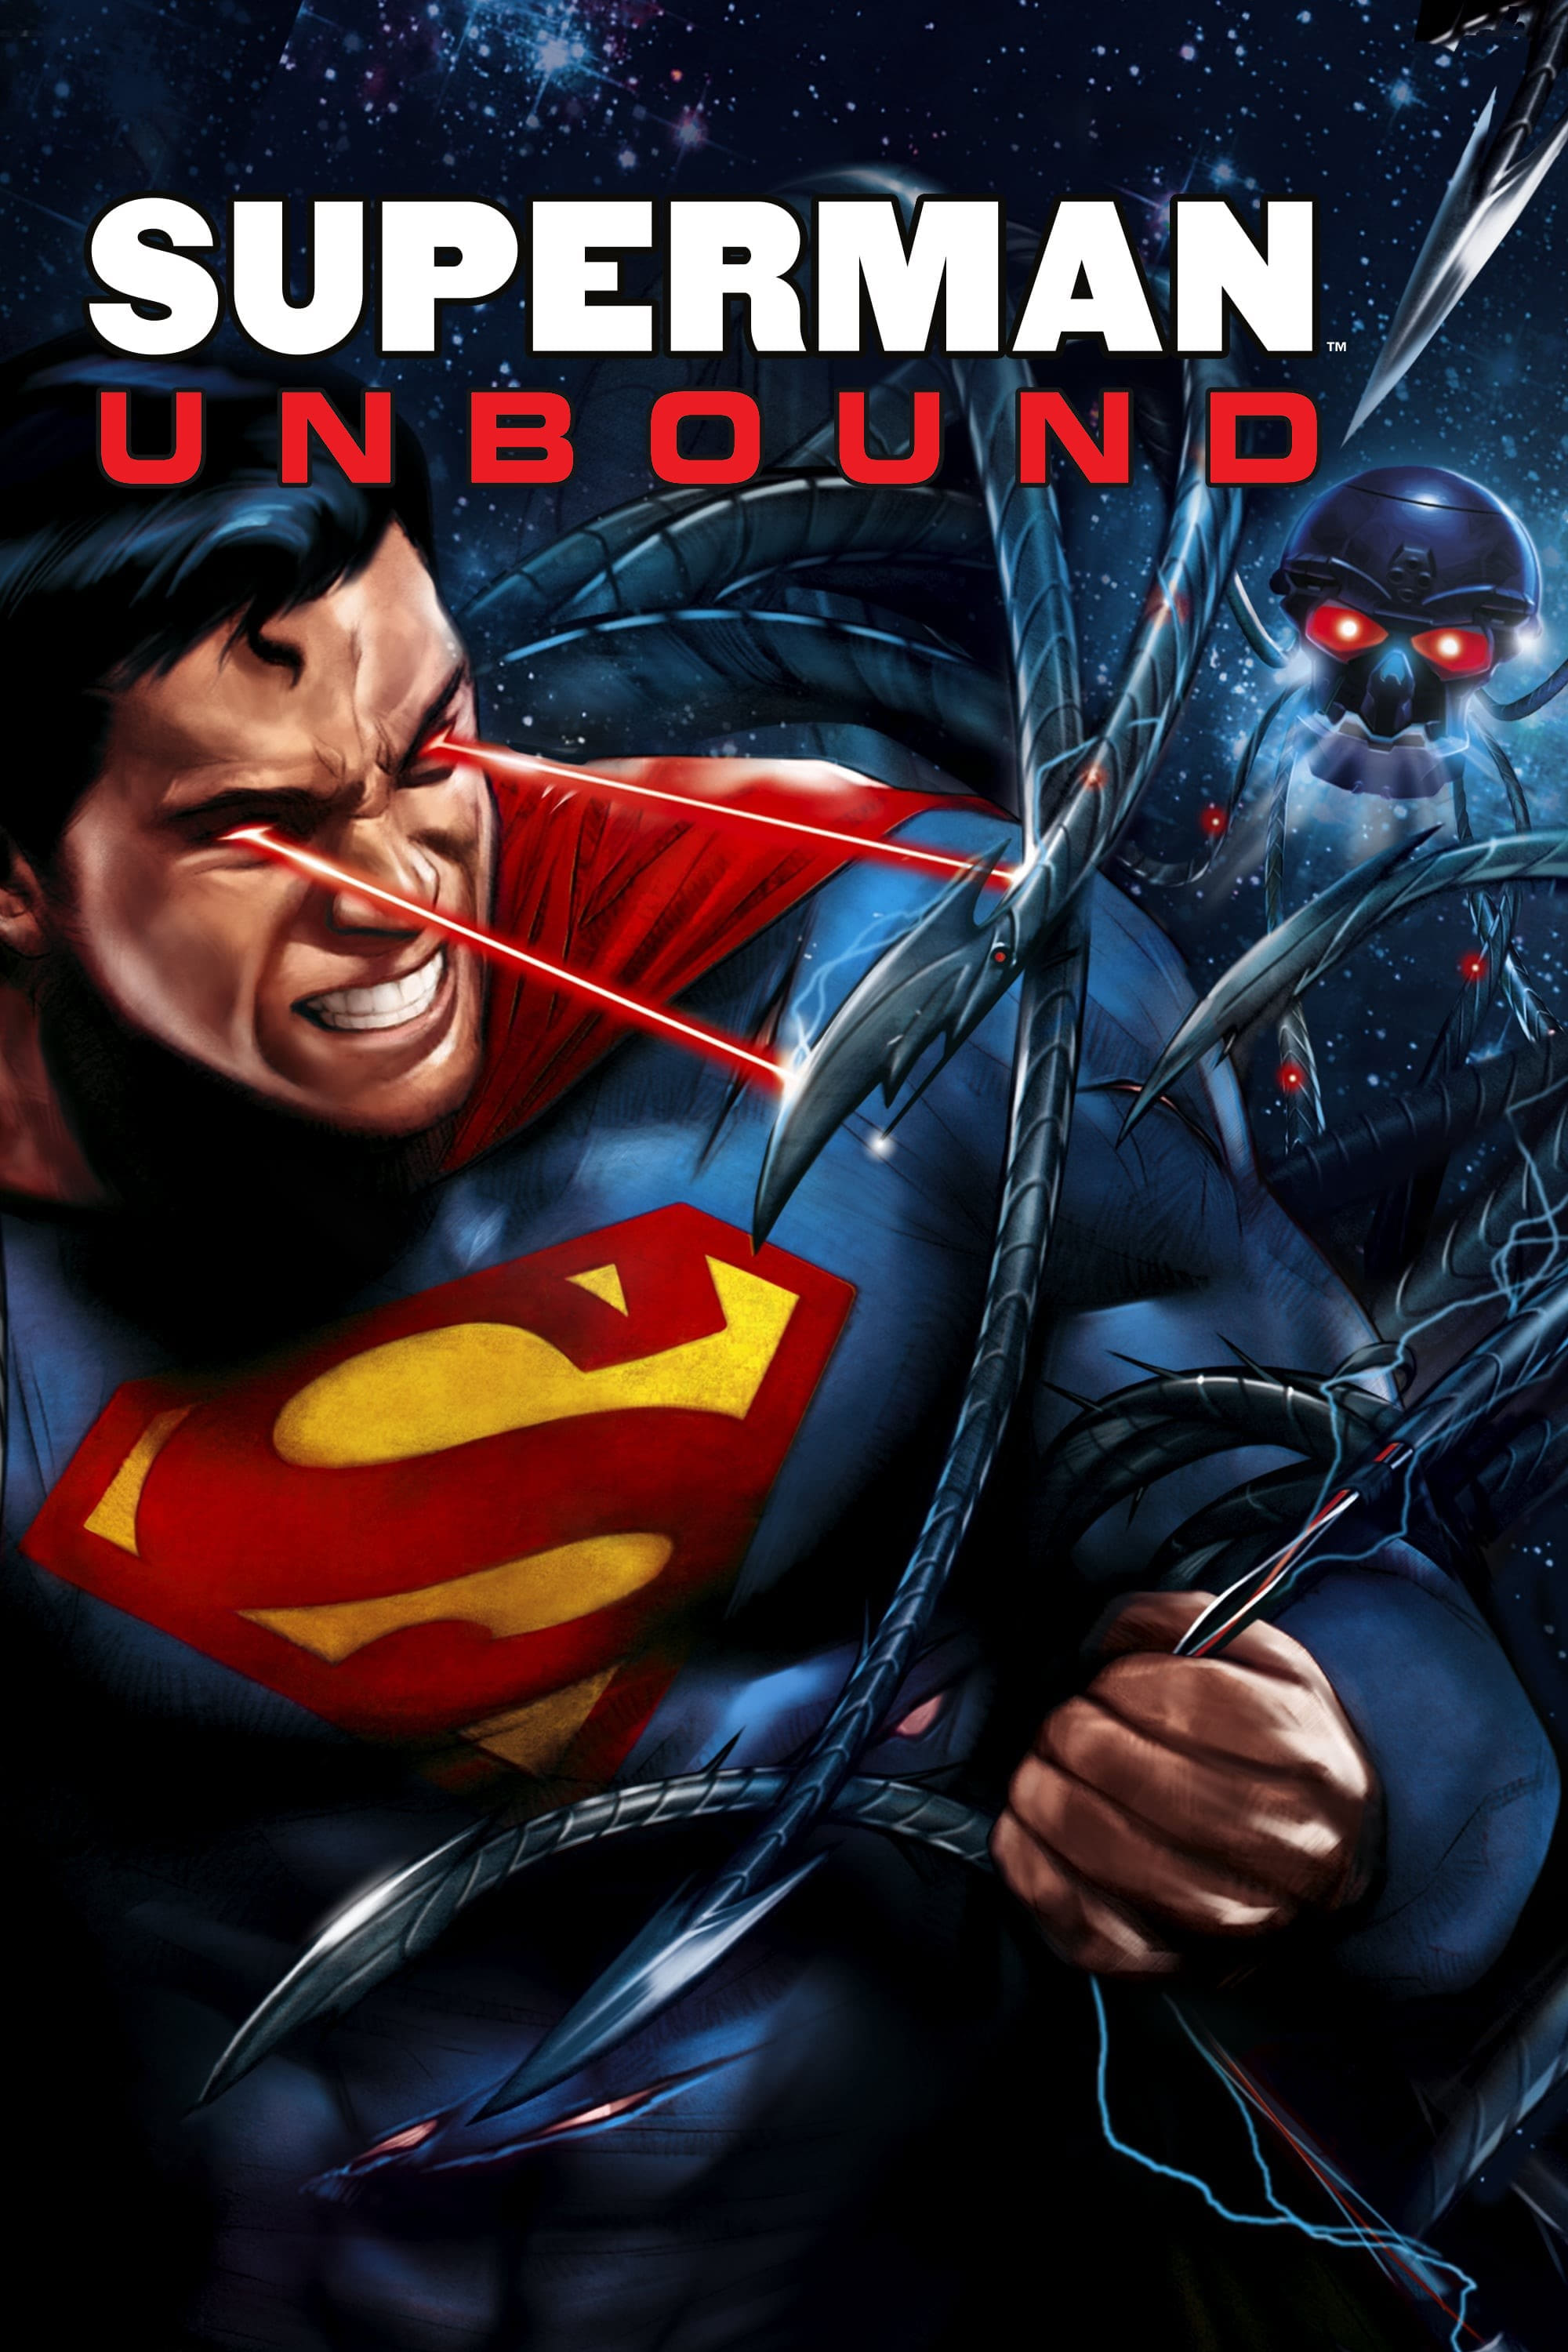 Superman: Unbound film